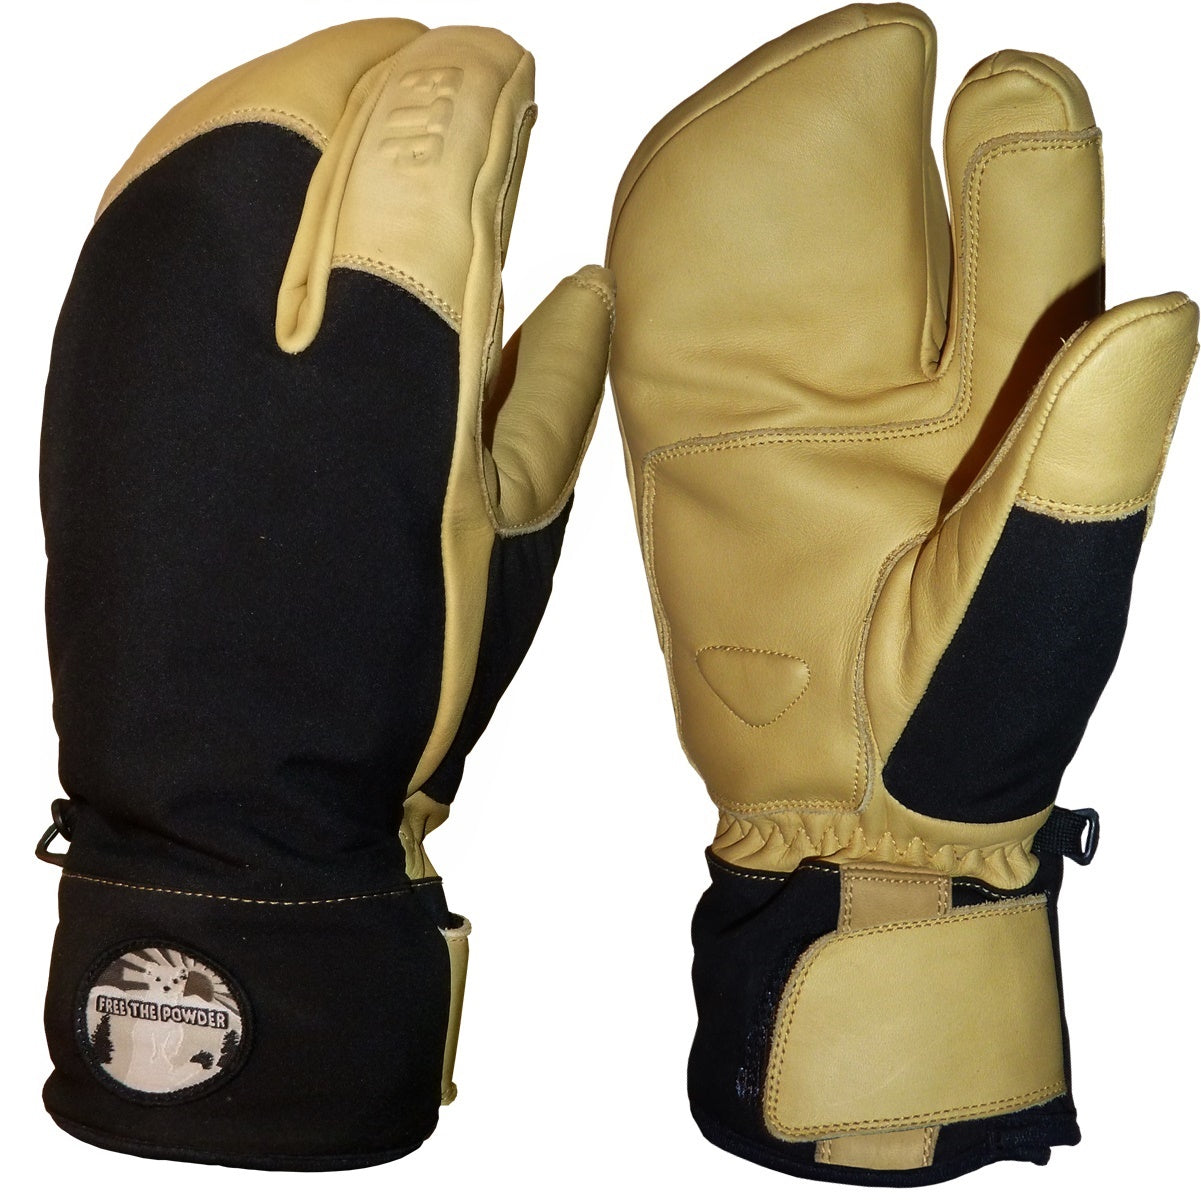 SX3 three fingered short cuff glove